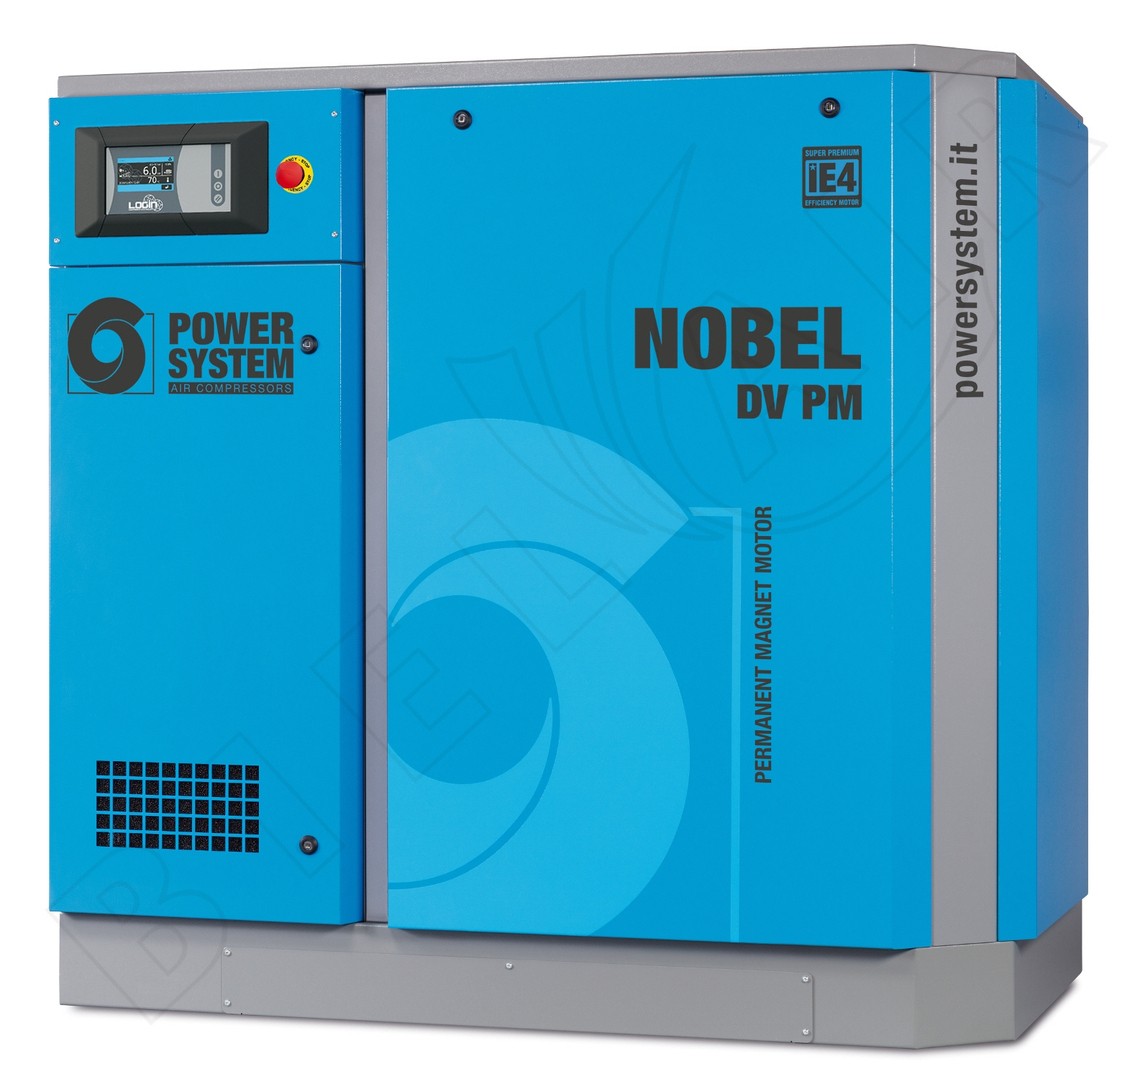 POWERSYSTEM Schraubenkompressor NOBEL 37-08 DV (PM) LOGIN Frequenzgesteuert